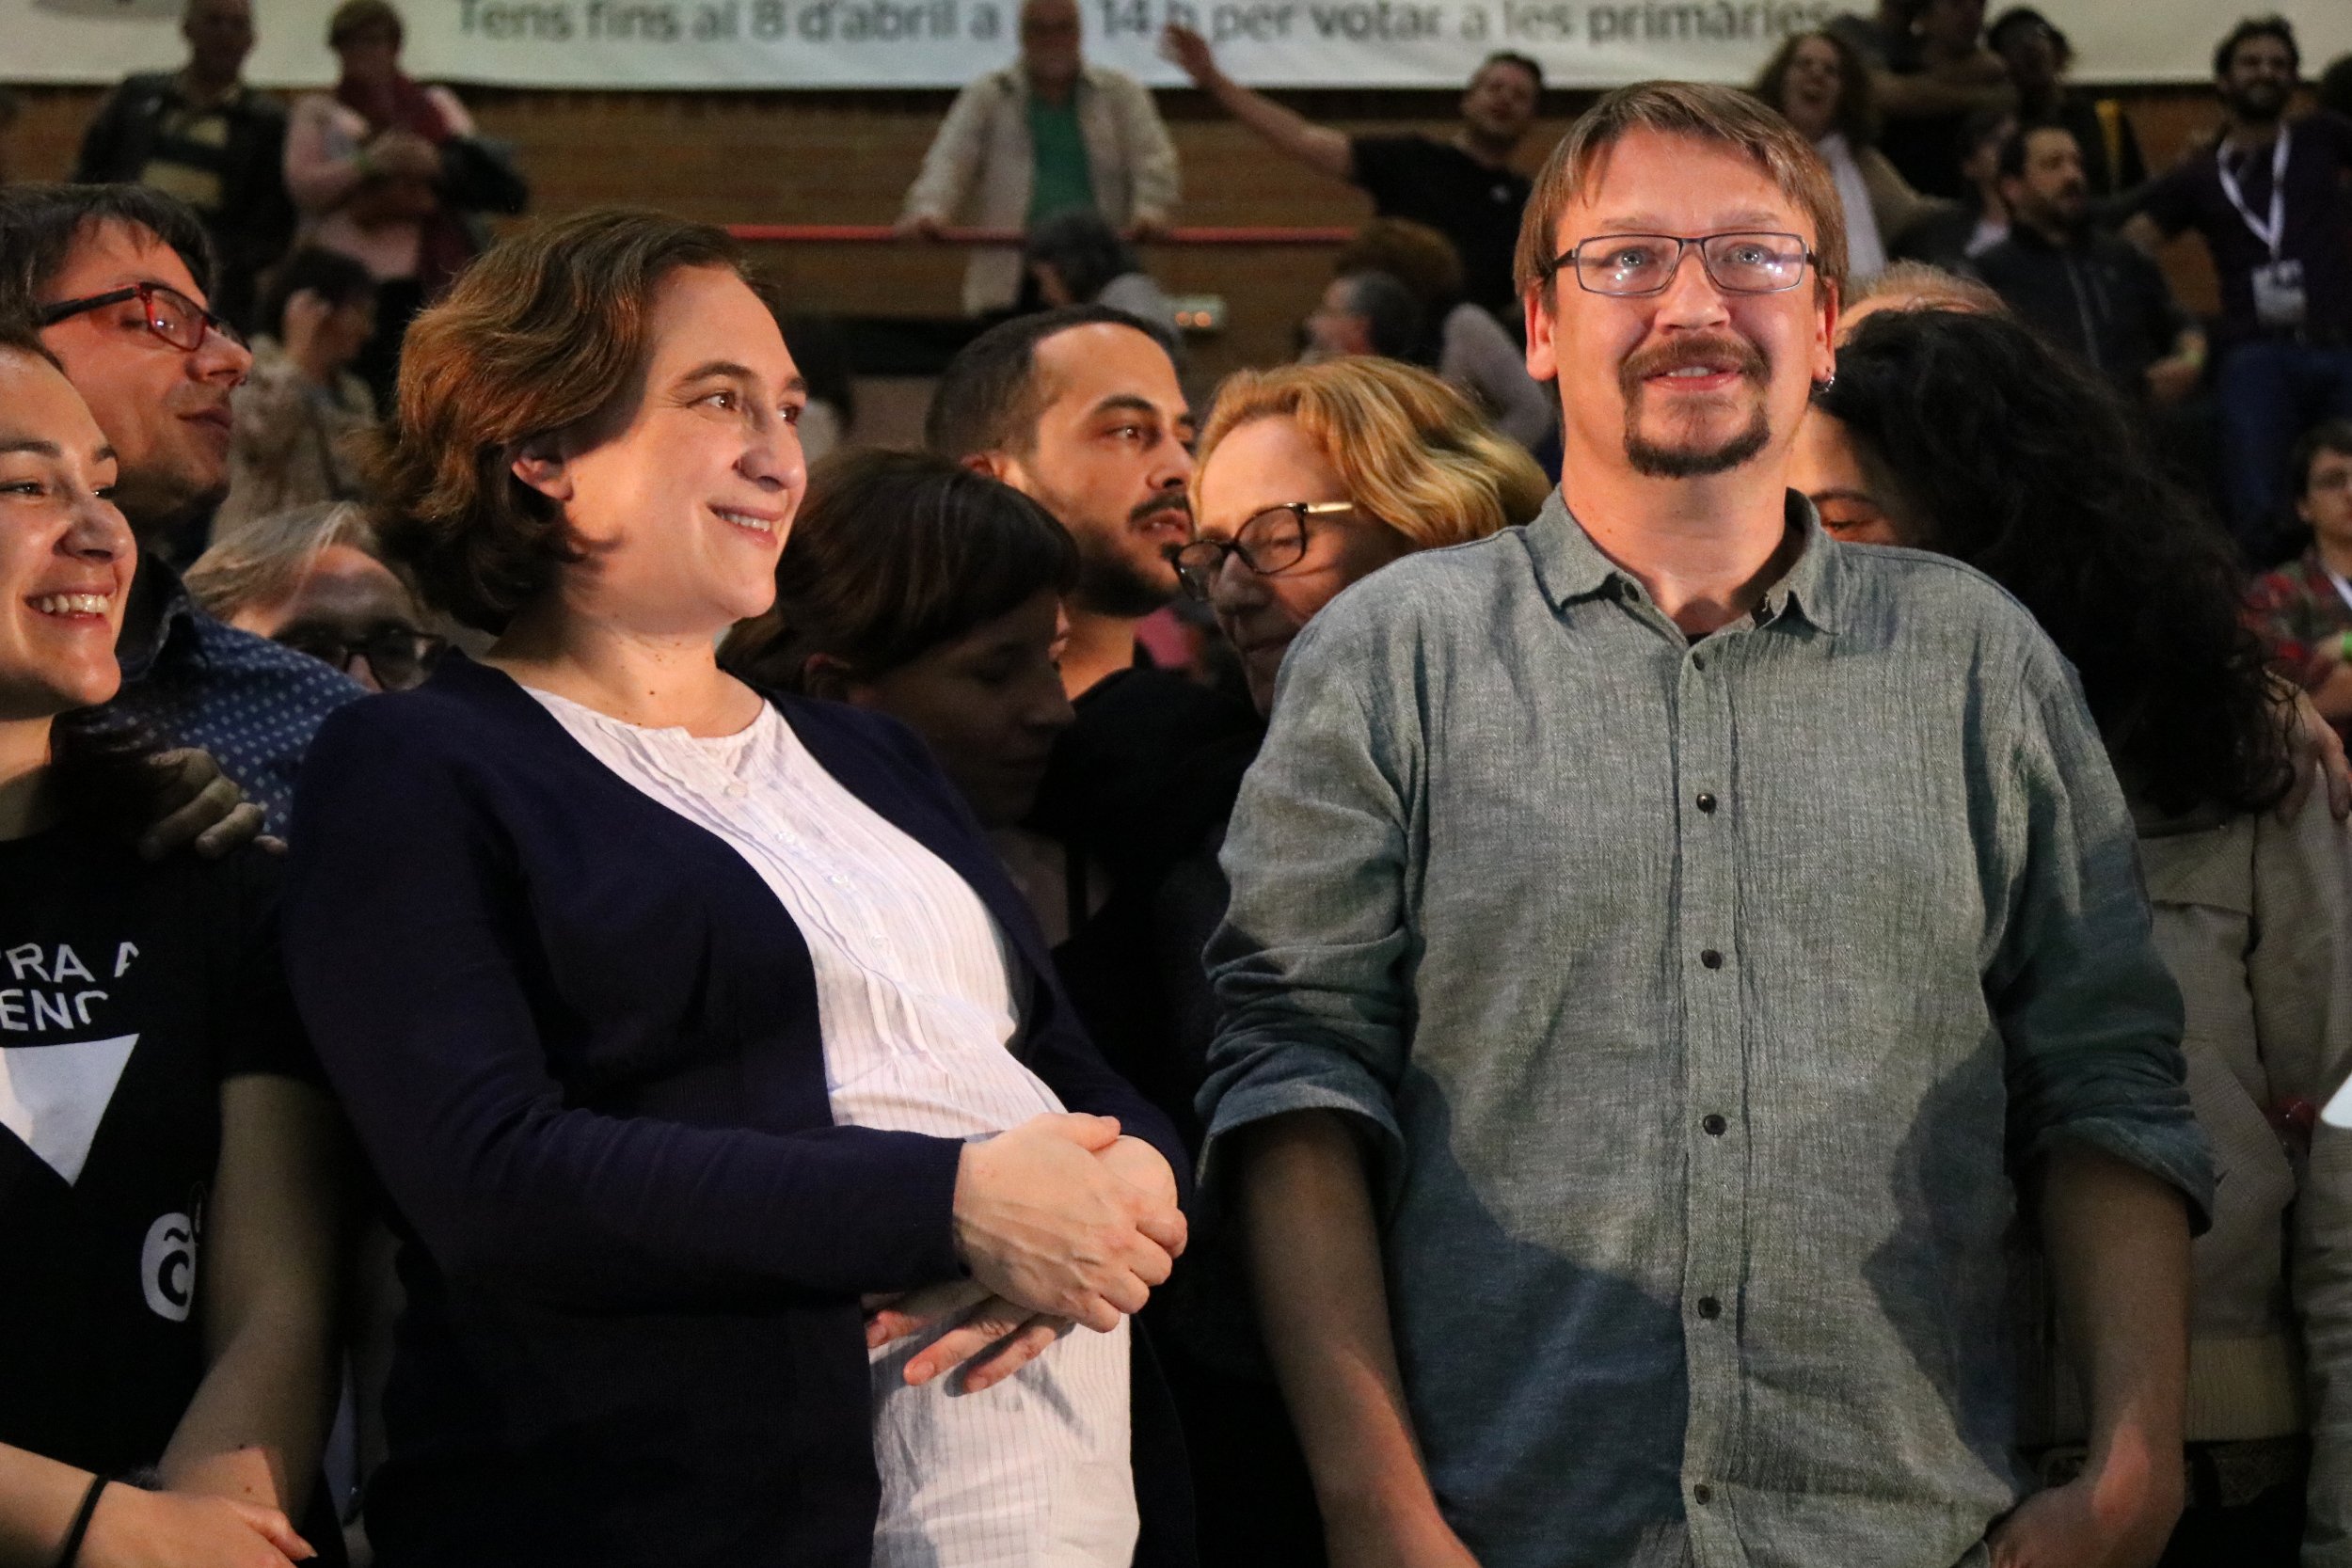 La propuesta de los comuns de crear una República catalana dentro de España provoca estupor